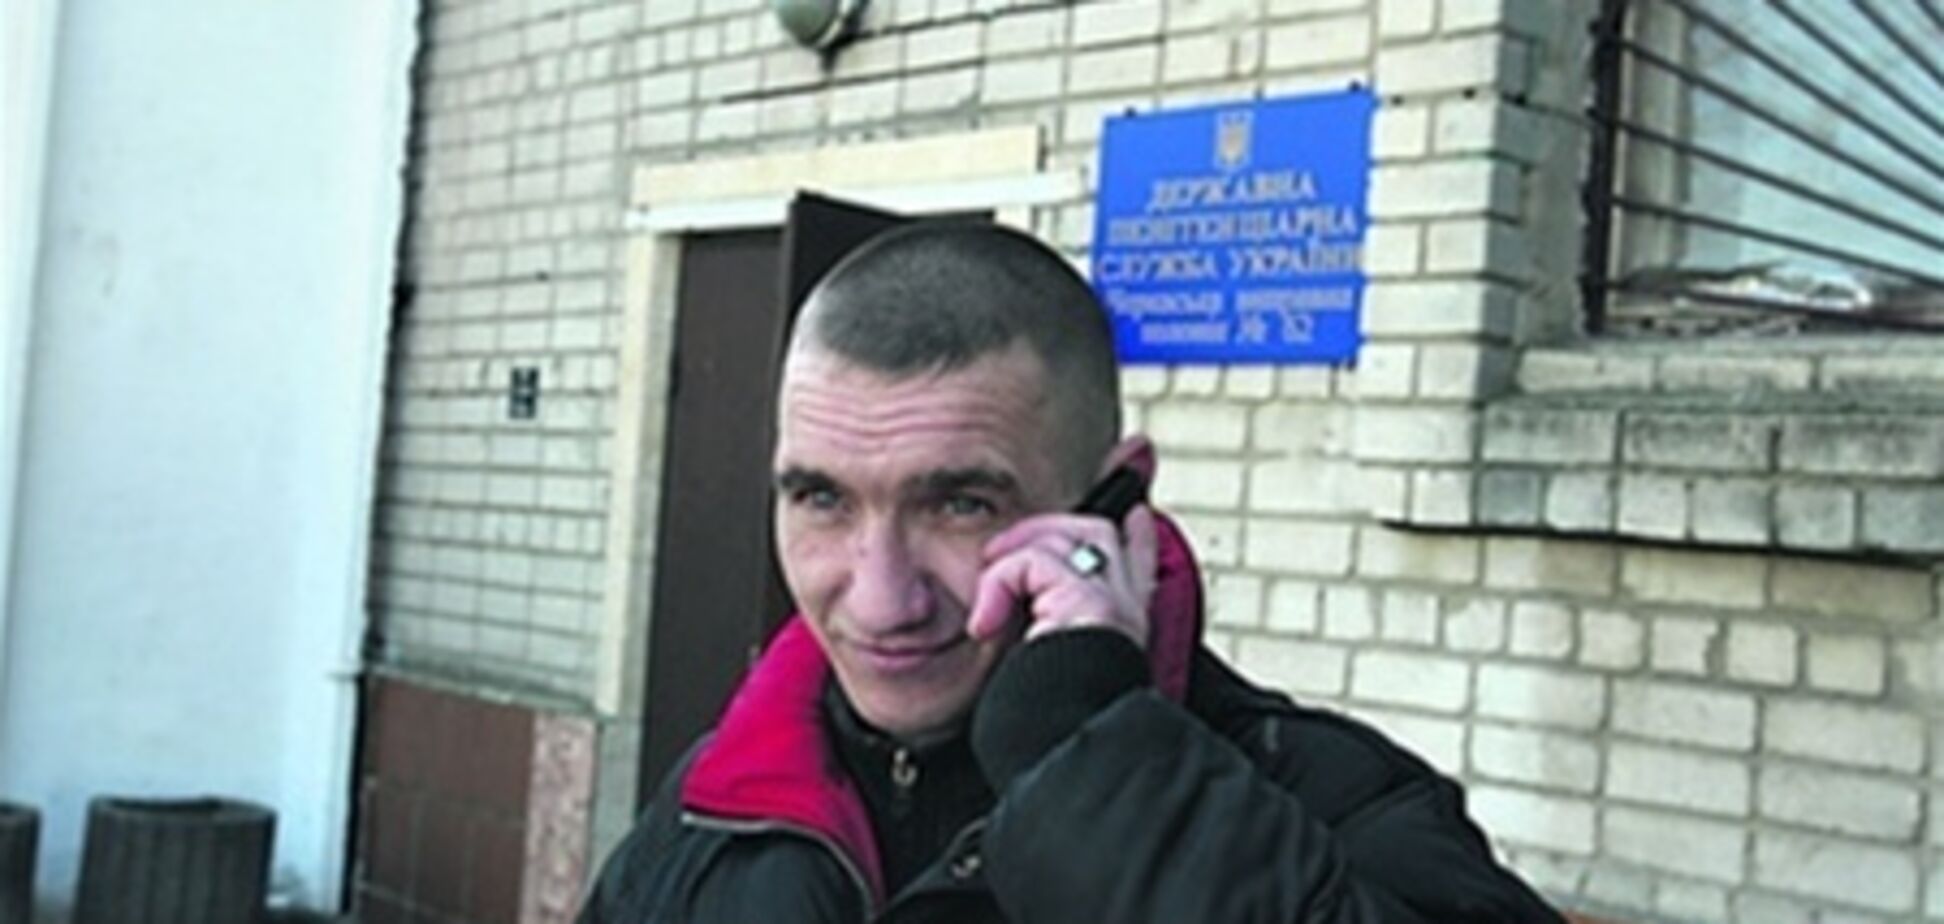 В Украине заключенным могут разрешить пользоваться мобилками